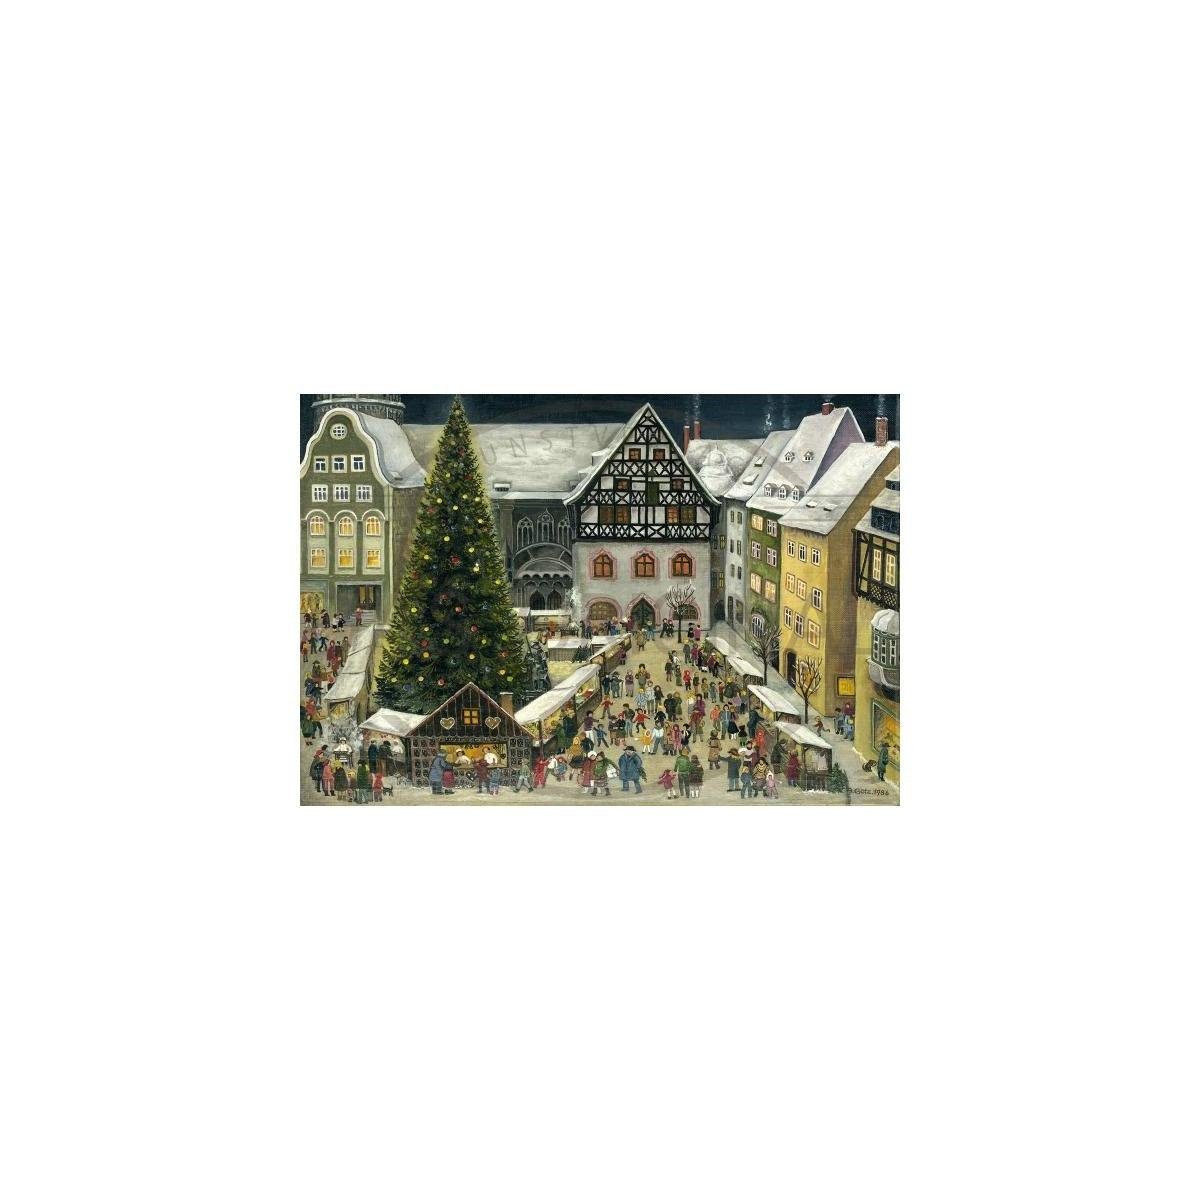 Weihnachtspostkarte Grußkarte & Weihnachtsmarkt Olewinski Tochter Jena - 2942 -